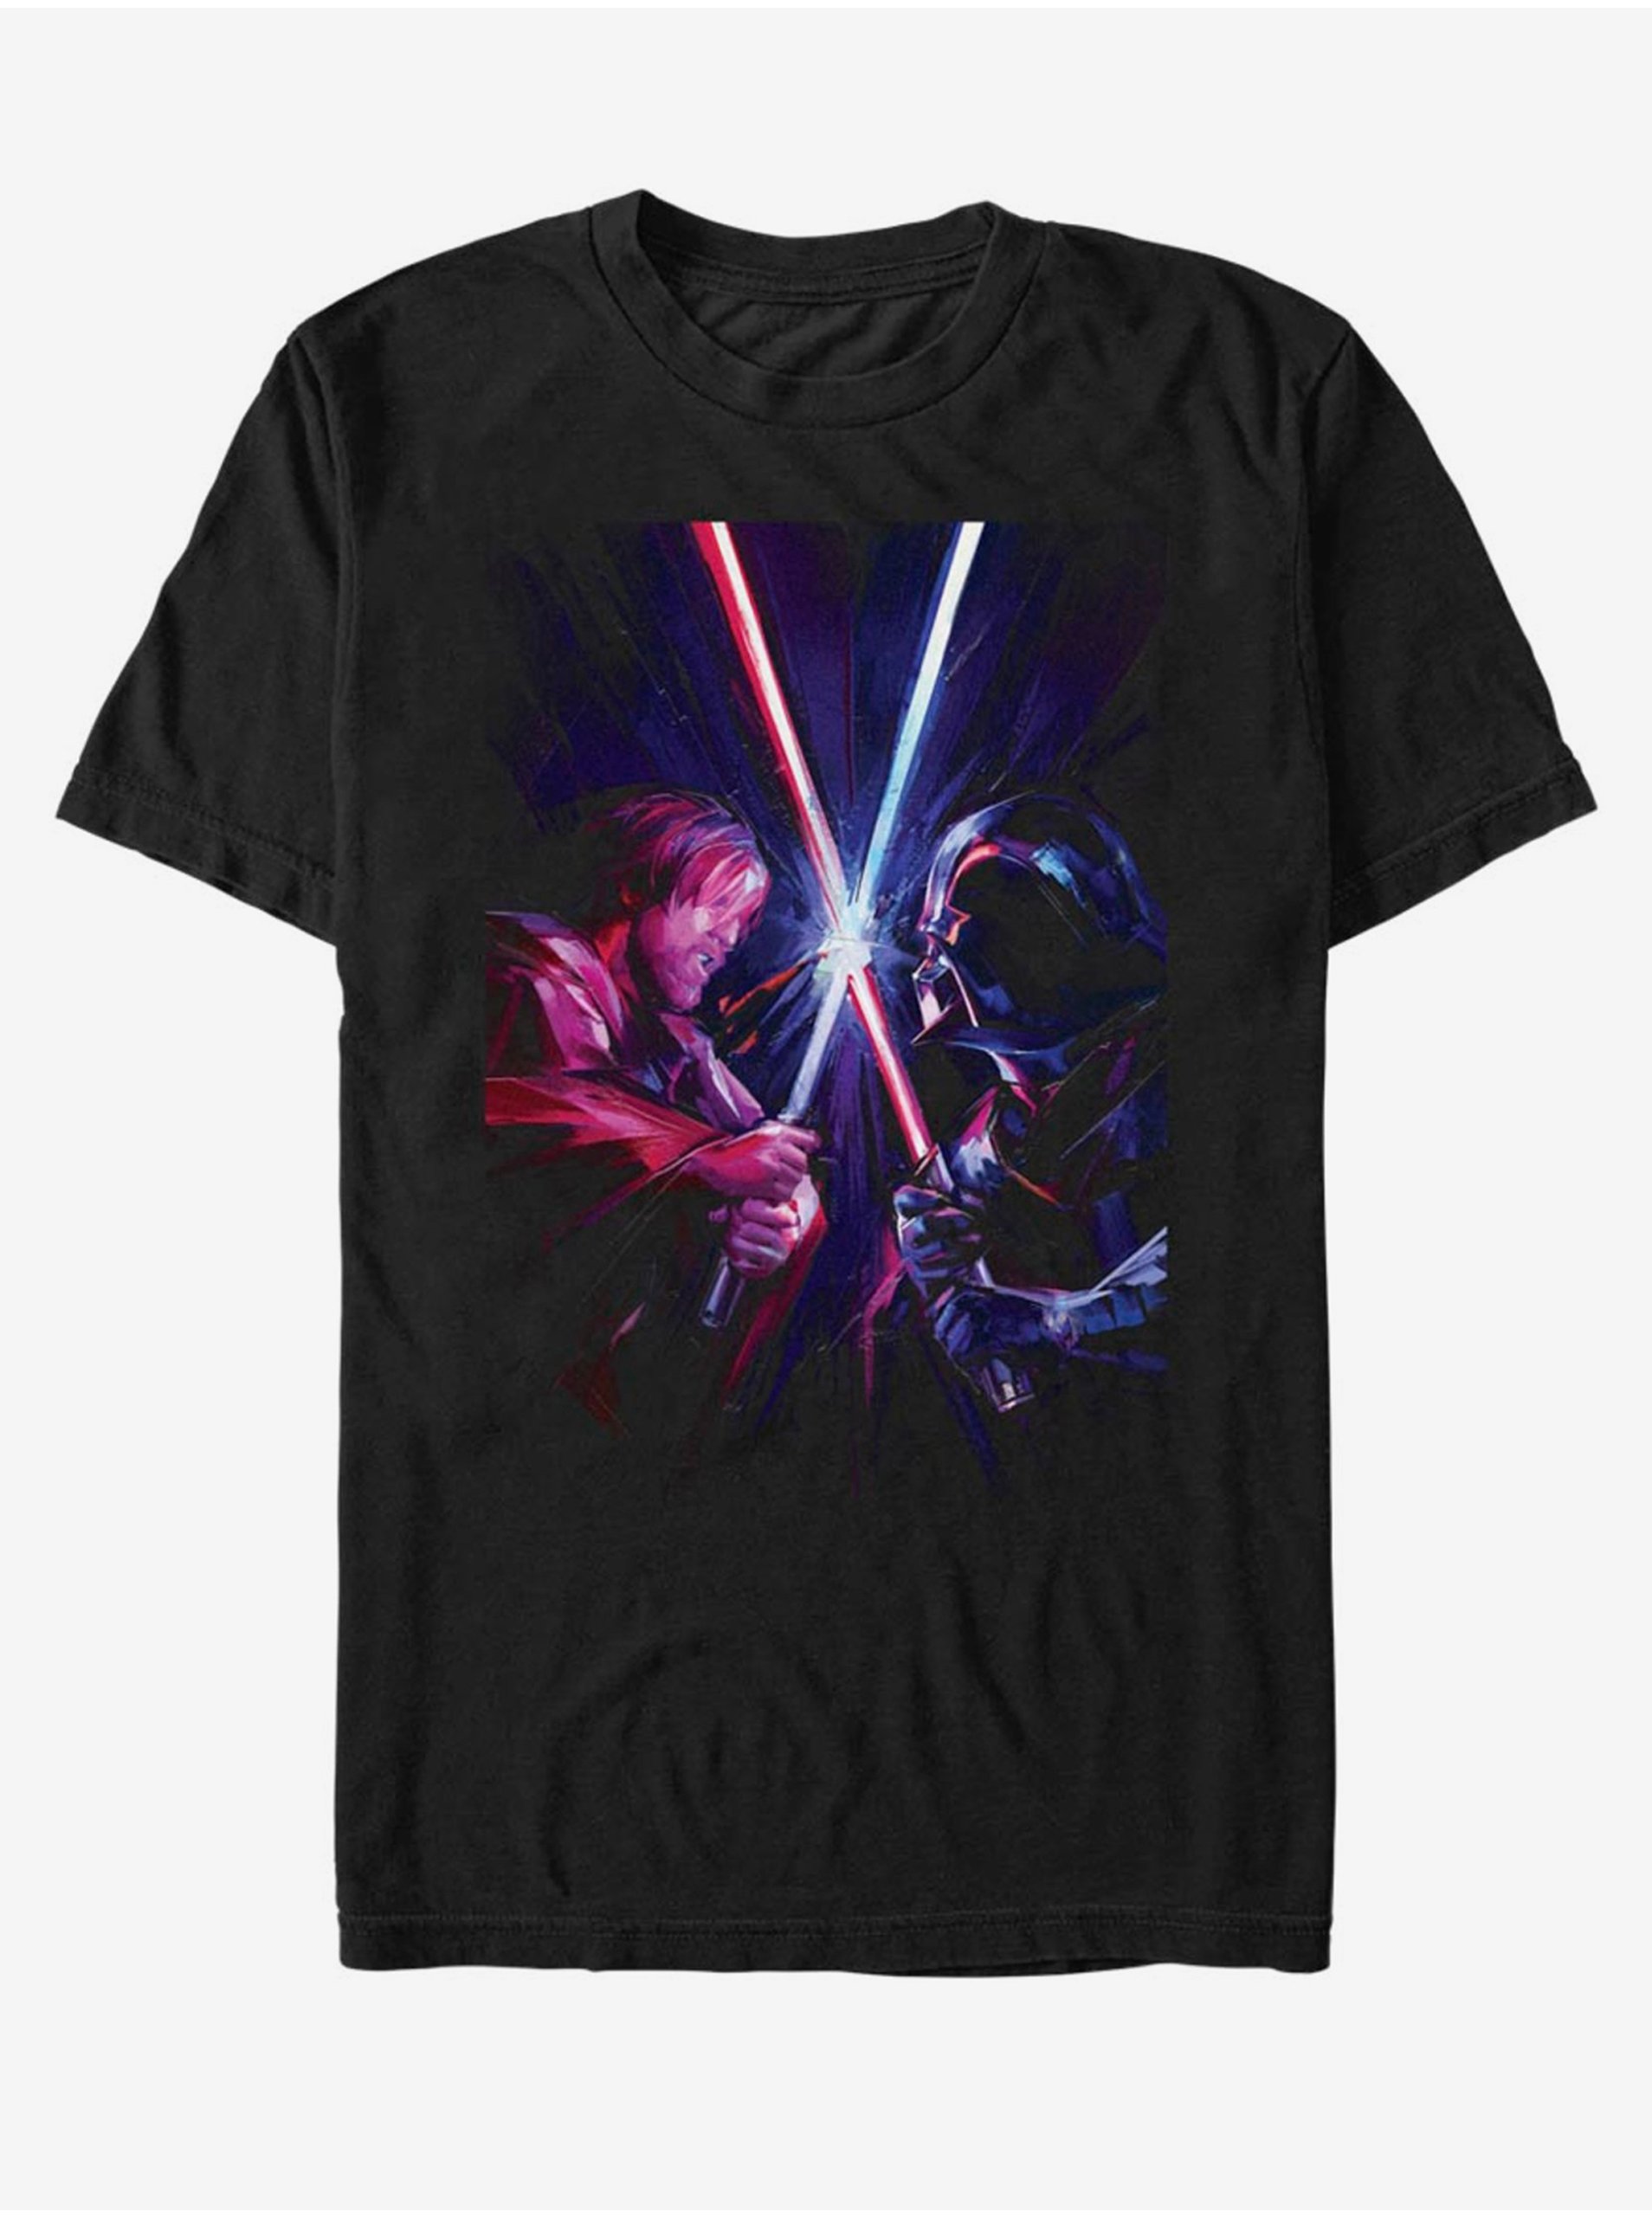 Lacno Obi Van Kenobi Darth Vader ZOOT. FAN Star Wars - unisex tričko